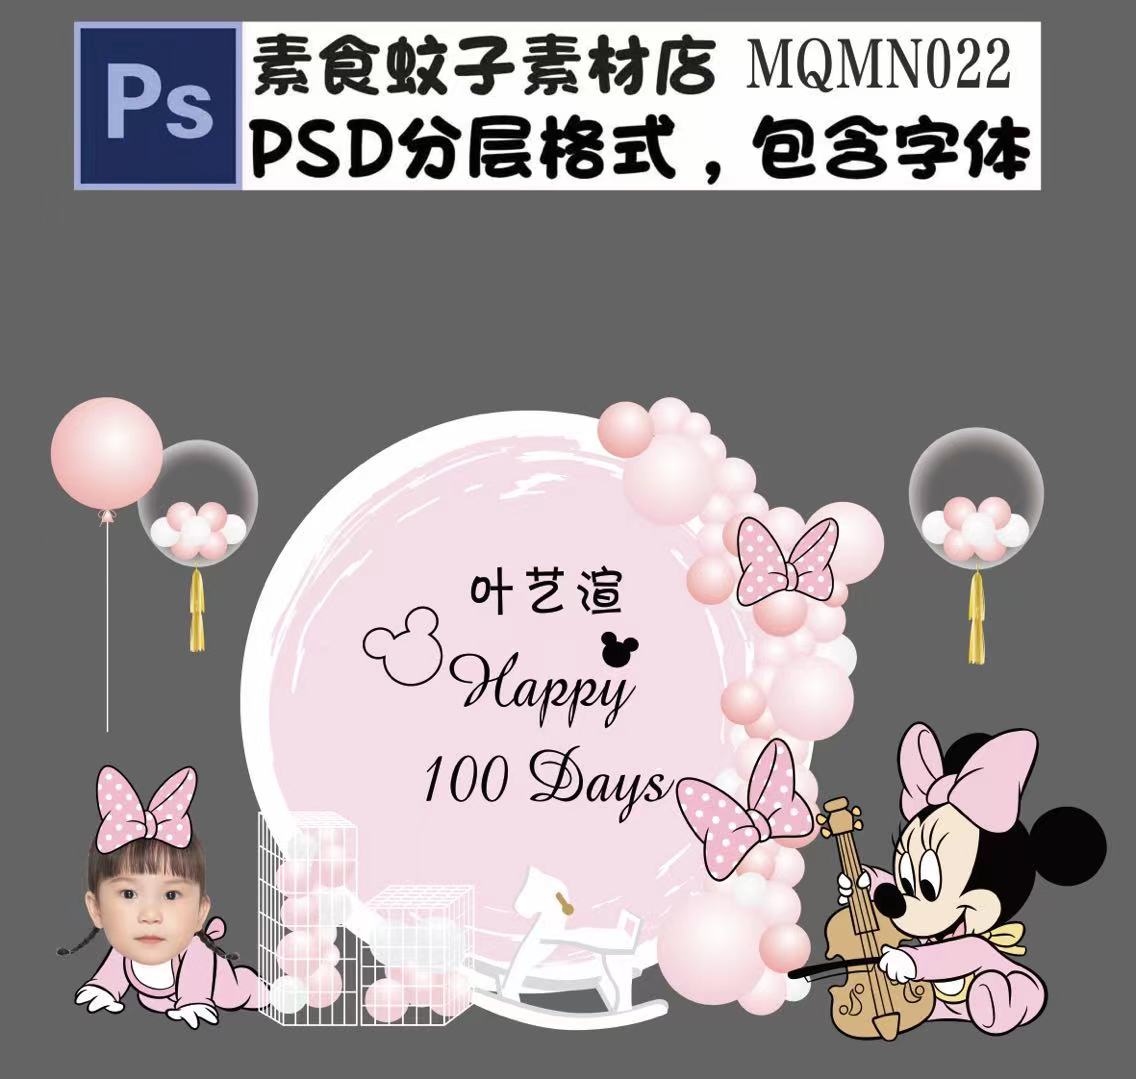 Chibi-MN022, mẫu PSD phối cảnh sinh nhật bé gái Mickey màu hồng ...